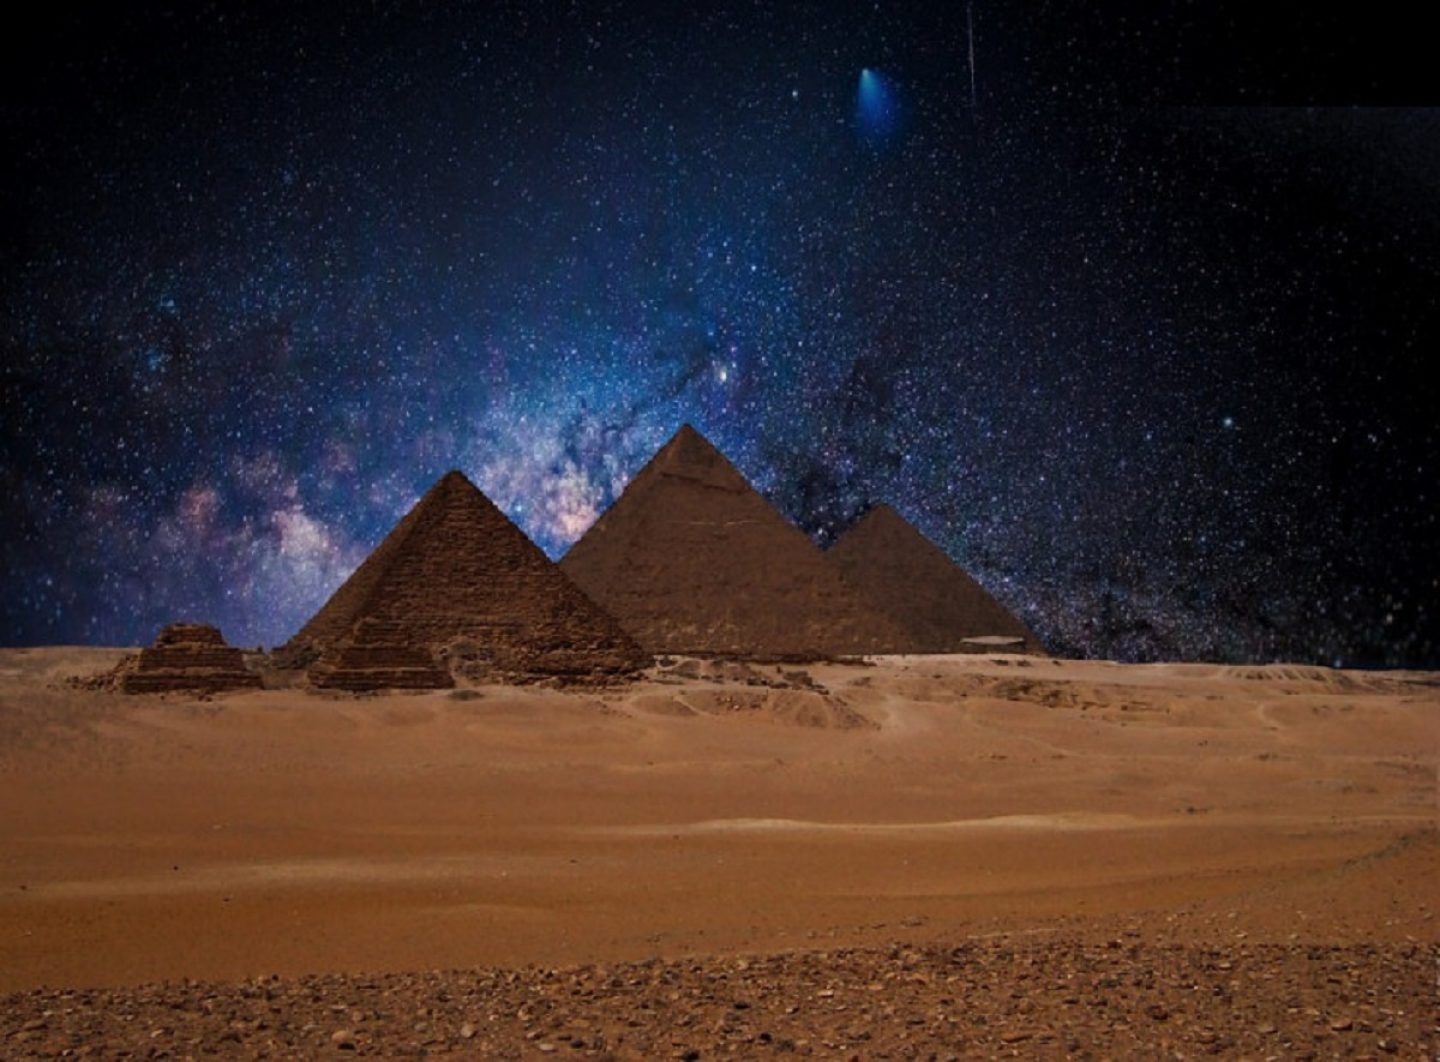 Kim tự tháp Ai Cập cổ đại là một trong những hiện vật có giá trị lịch sử vô cùng quý giá và đầy bí ẩn. Hãy đến xem bức ảnh để khám phá điều gì đã khiến cho những công trình kiến trúc này đánh dấu bởi dấu ấn lịch sử và văn hóa đặc sắc của Ai Cập.